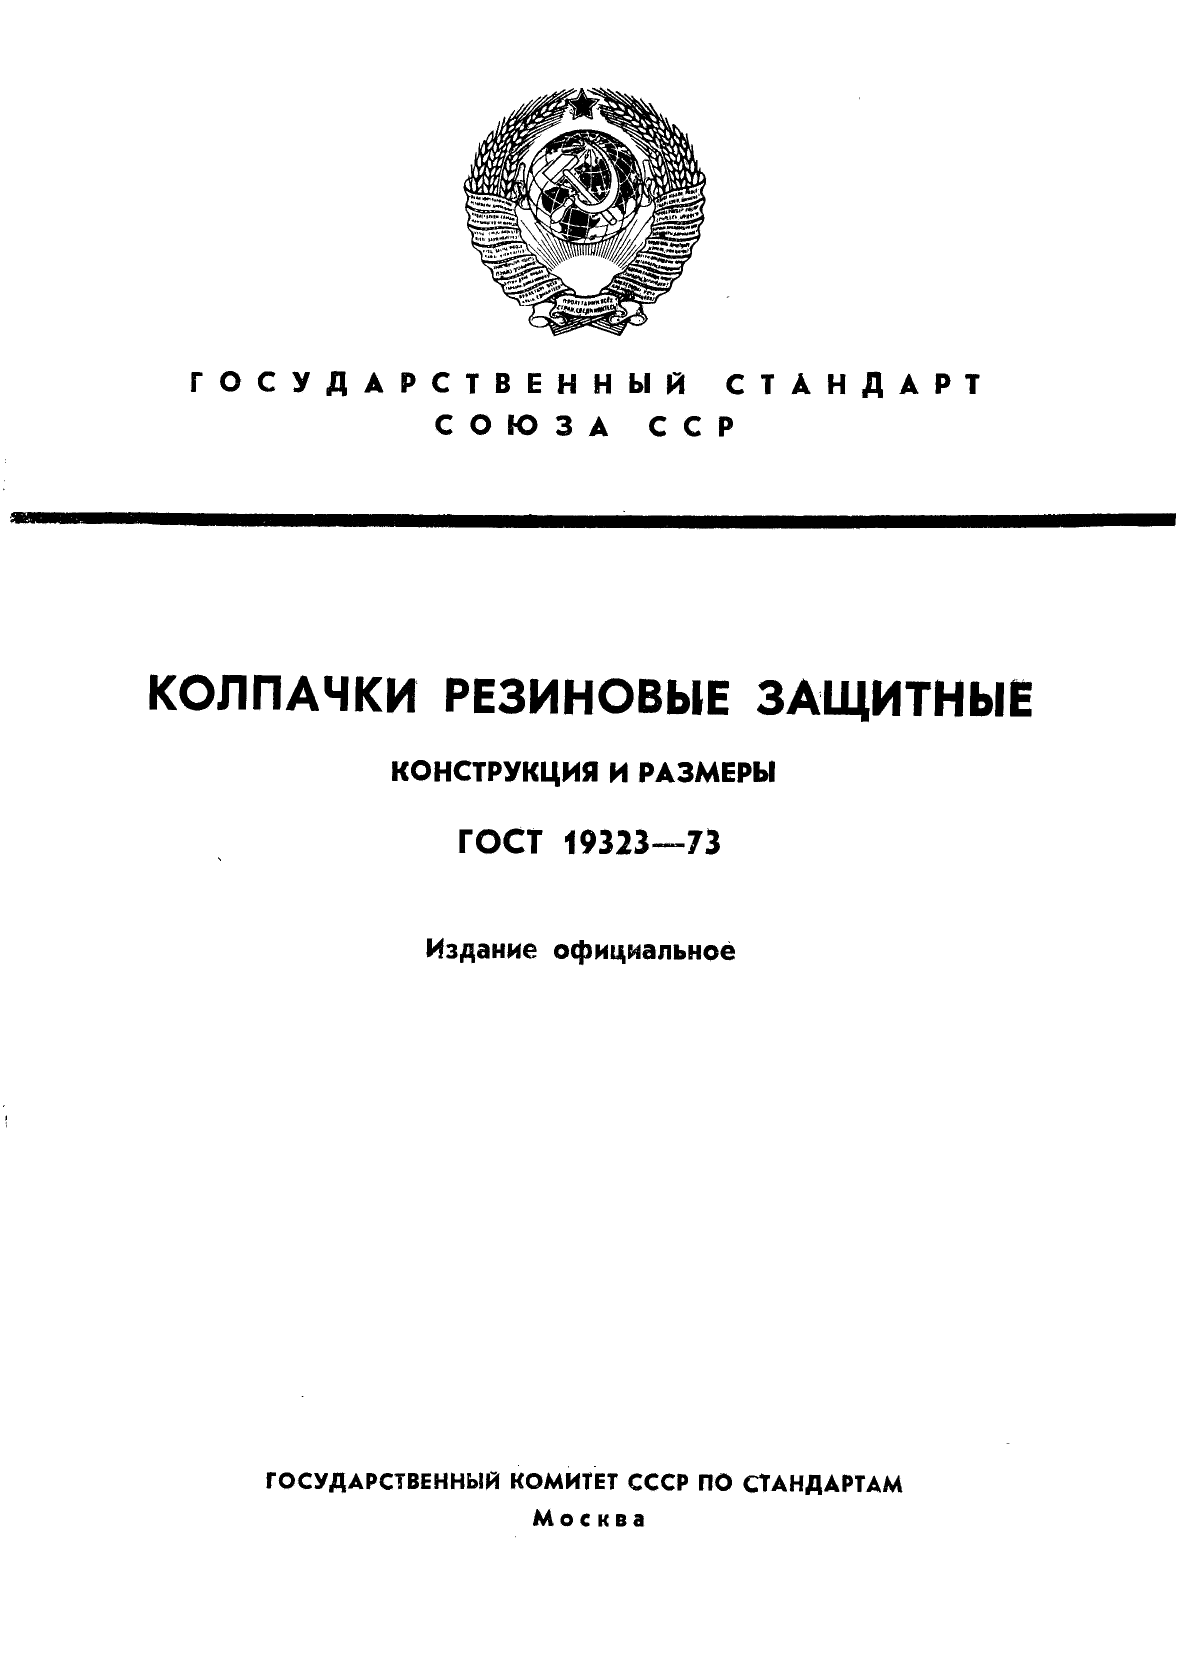  19323-73.   .   .  1